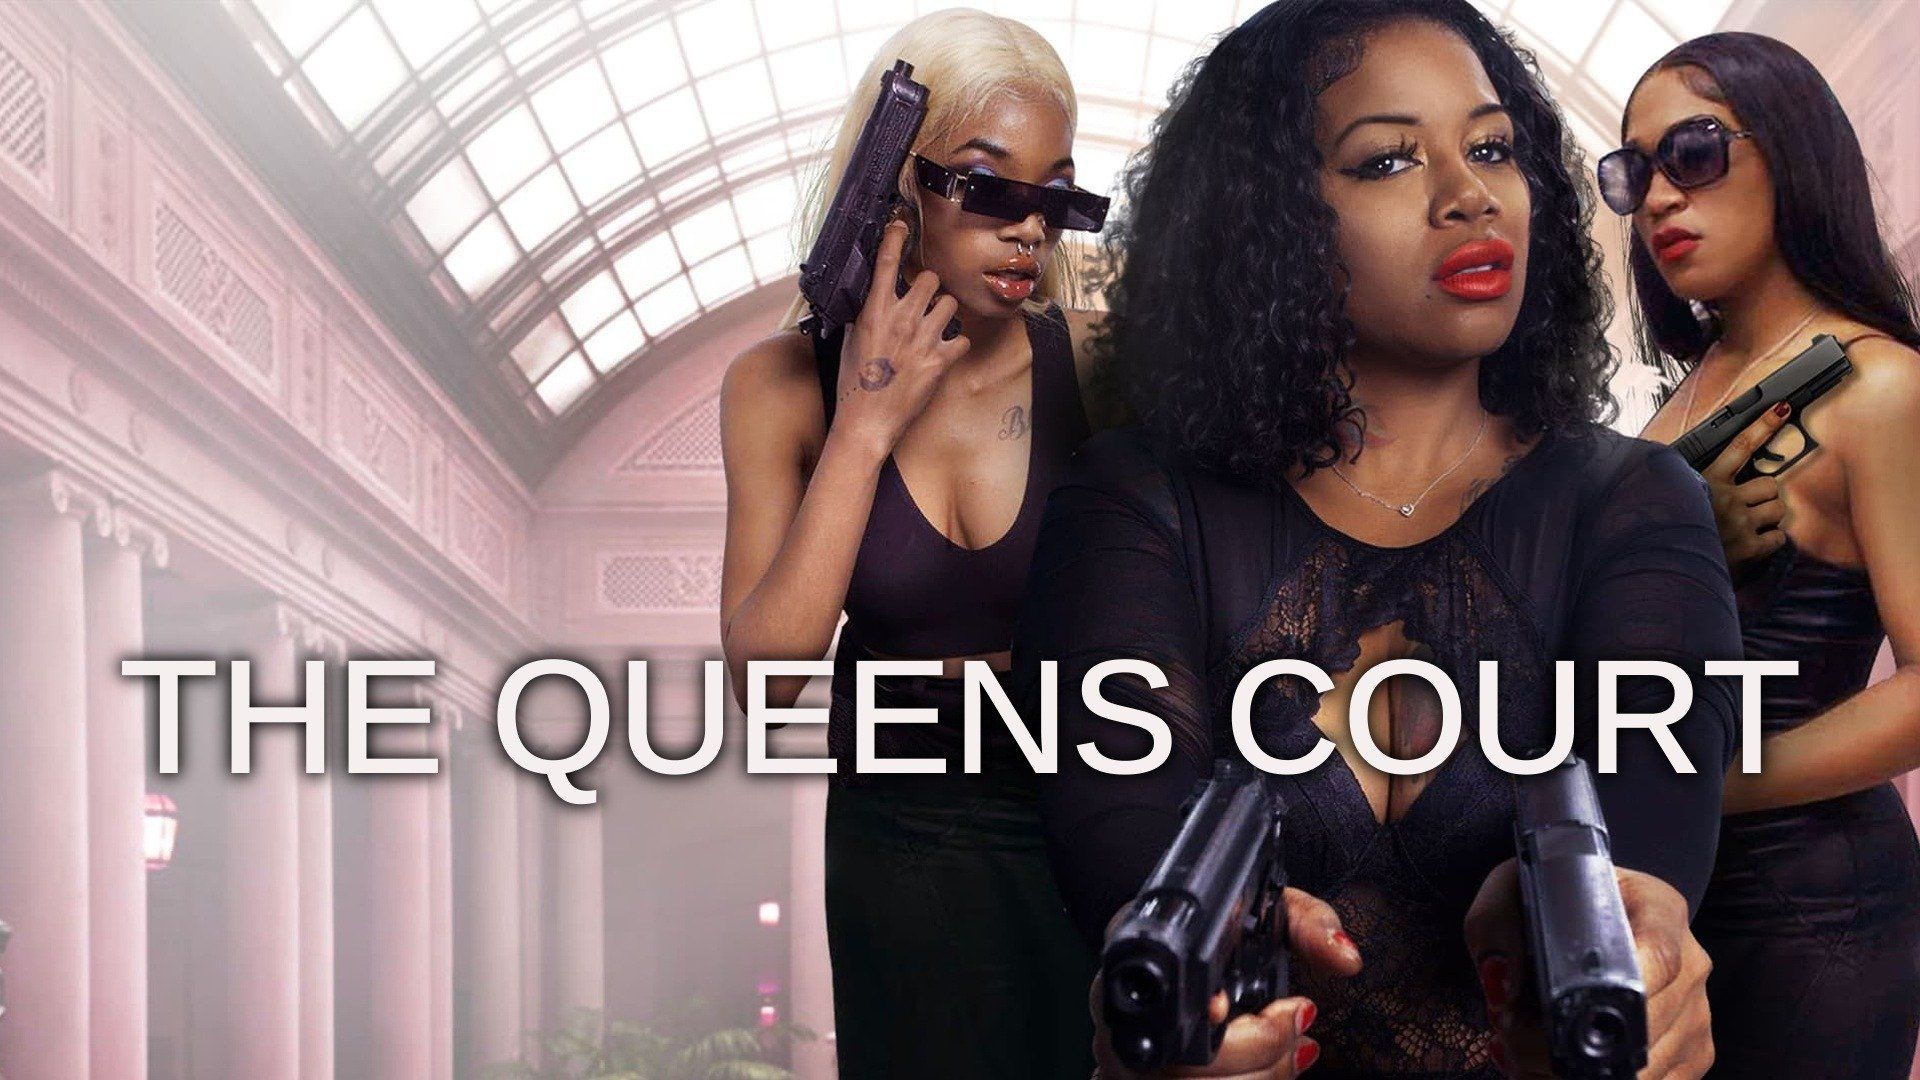 Watch The Queens Court Full Movie Free Online Plex